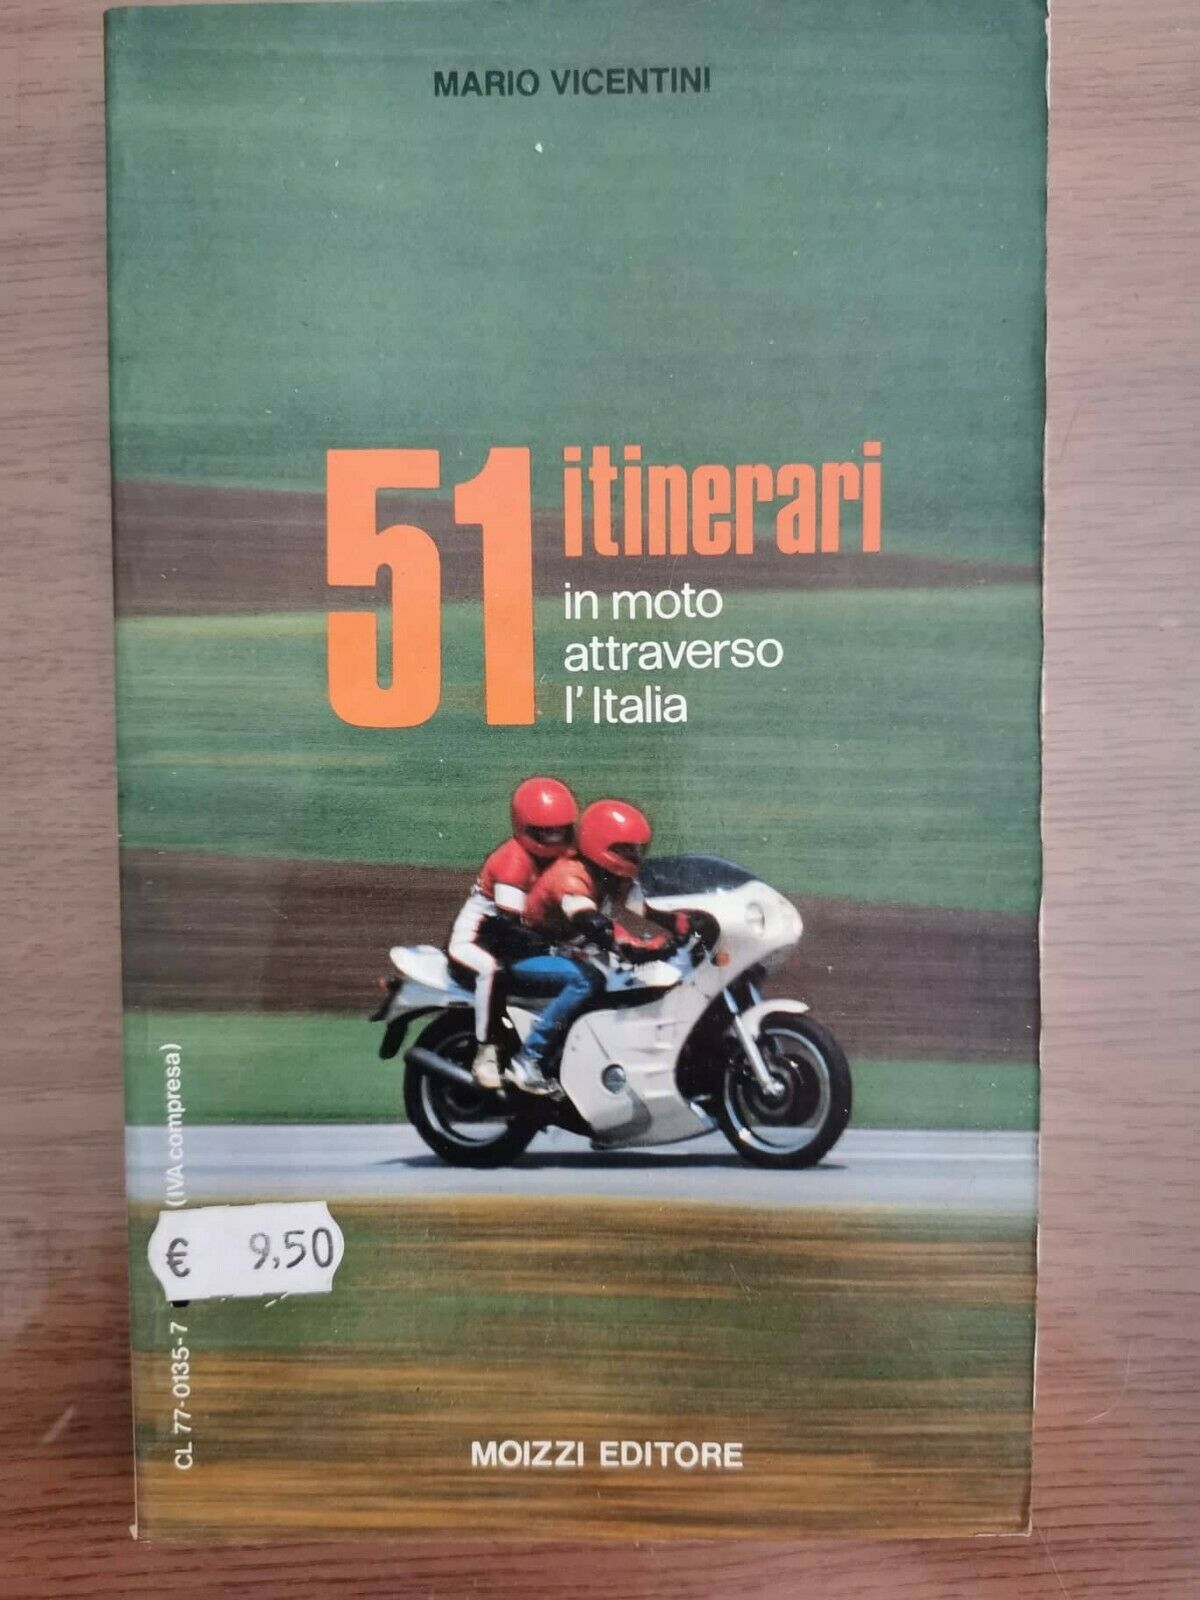 51 itinerari in moto attraverso l'Italia - M. Vicentini - Moizzi - 1987 - AR libro usato